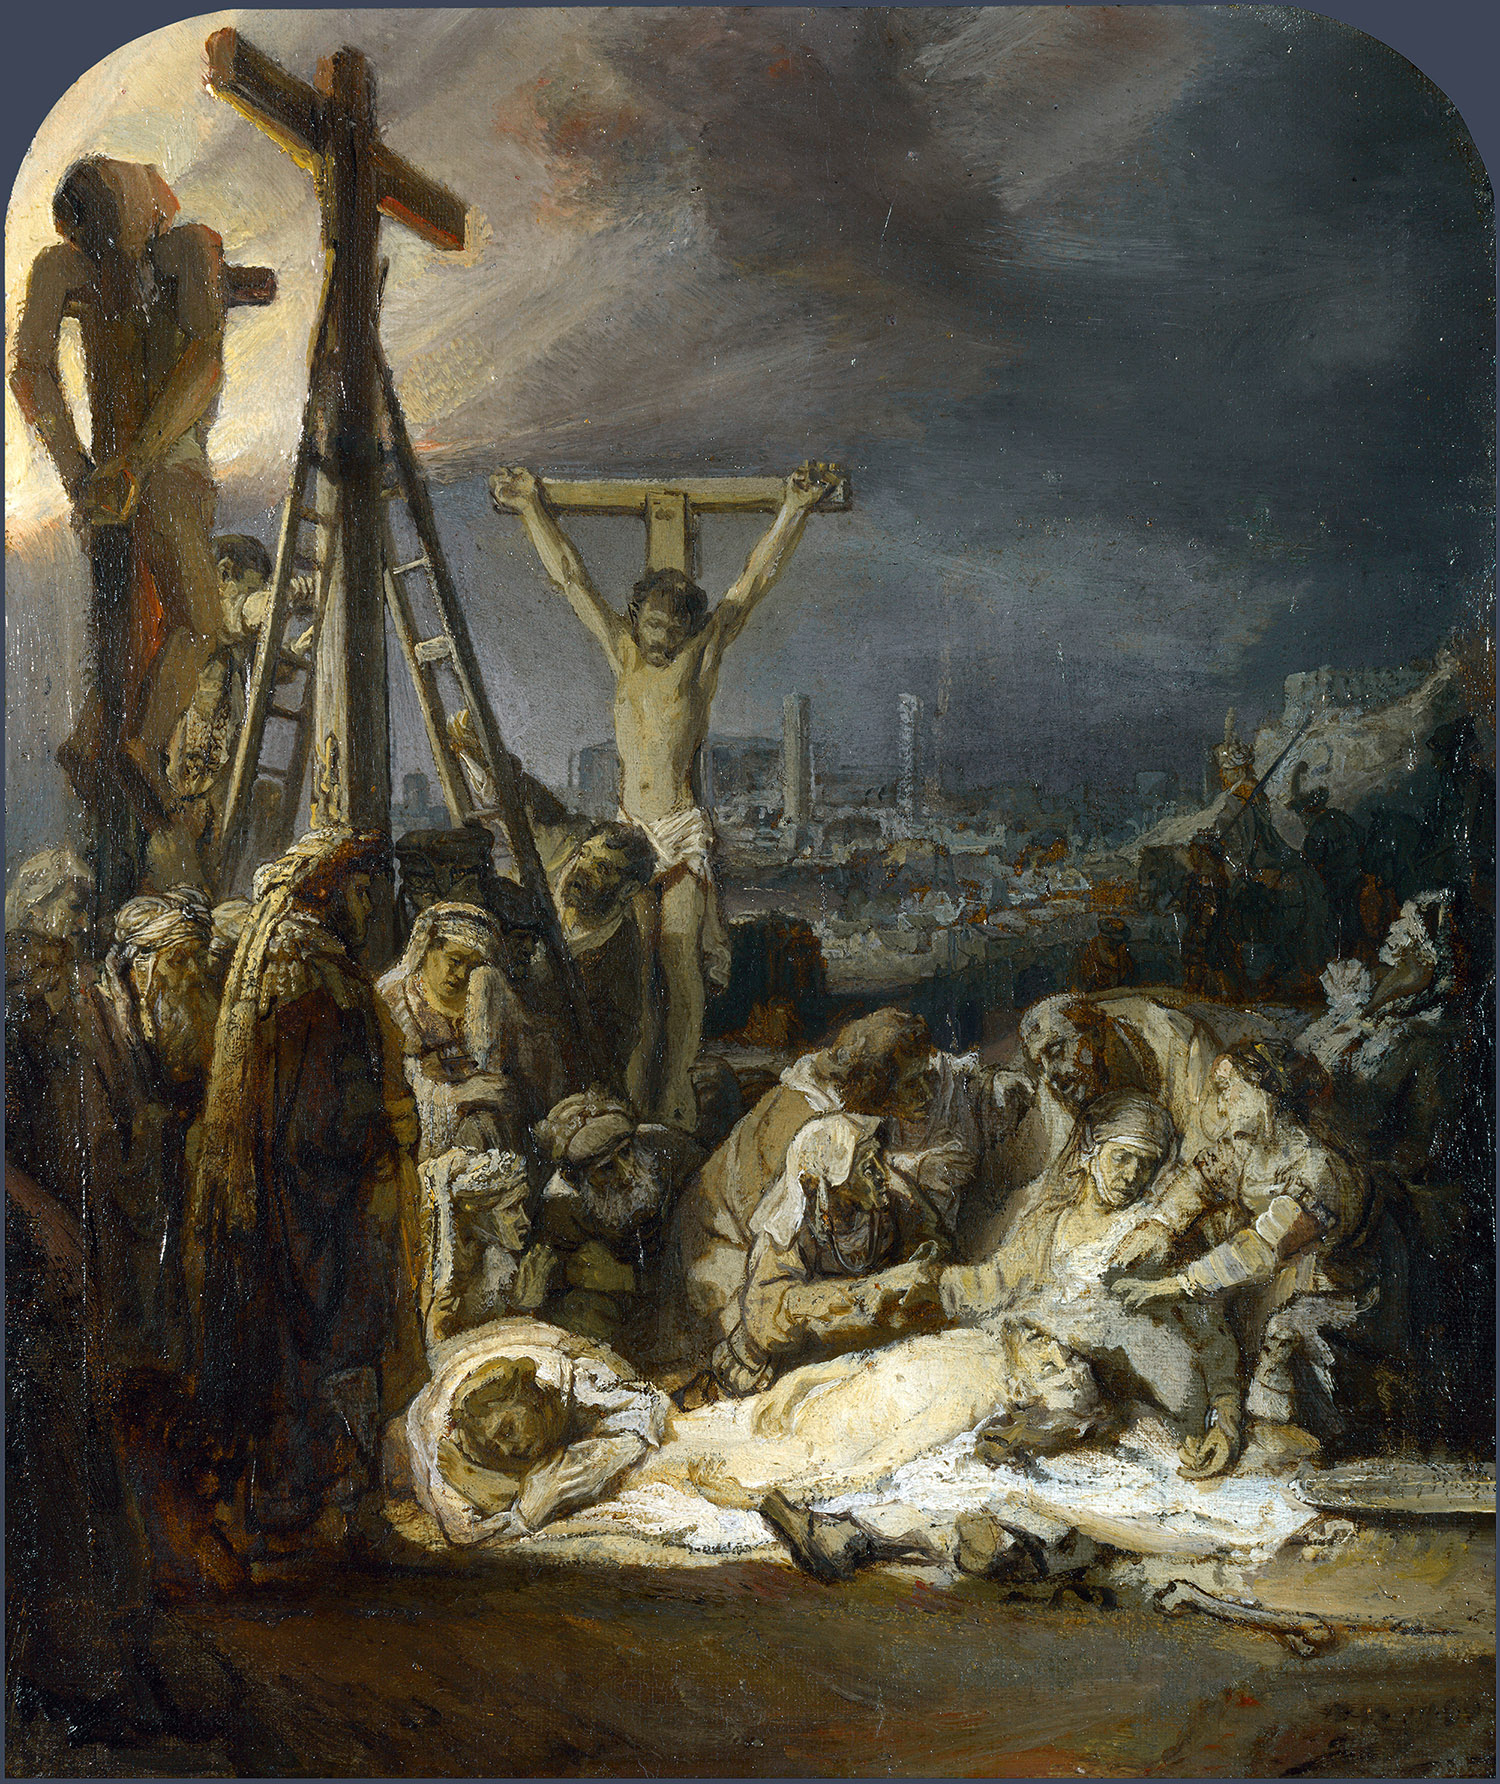 Рембрандт Харменс ван Рейн. "Оплакивание Христа". Около 1635. Национальная галерея, Лондон.